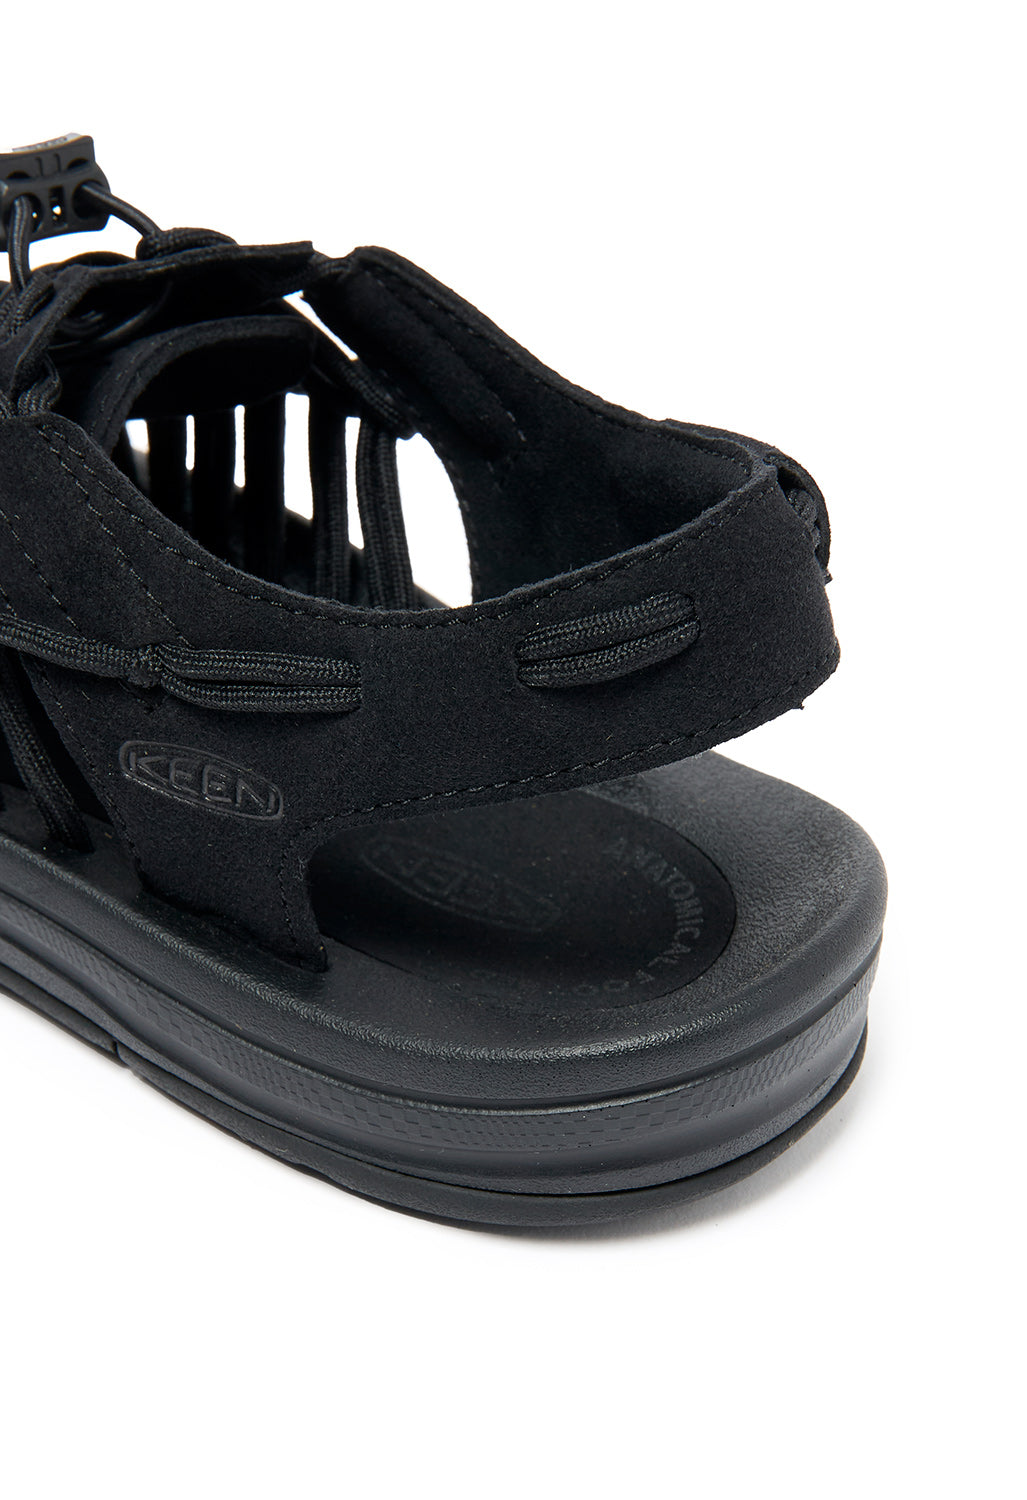 Keen Uneek Men's Sandals - Black / Black